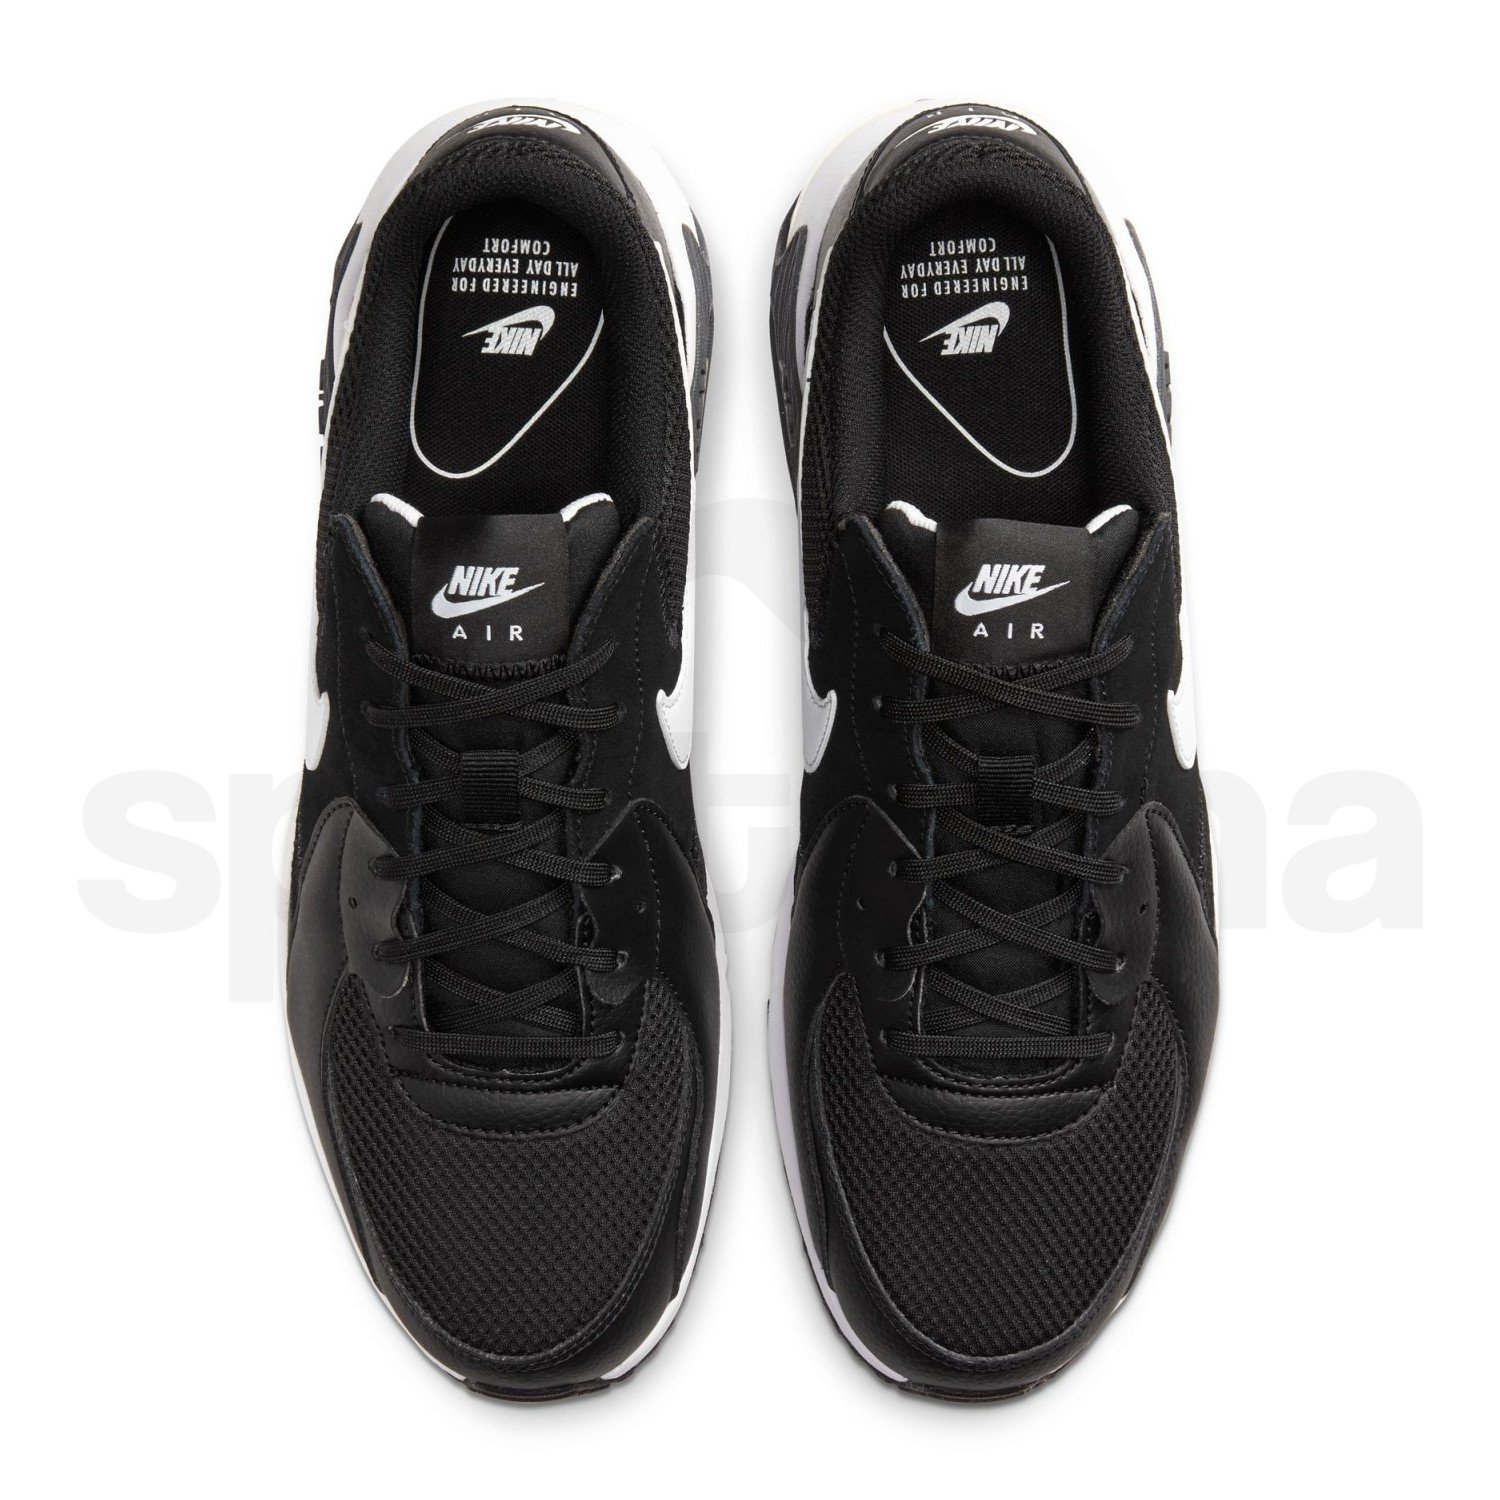 Obuv Nike Air Max Excee M - černá/bílá